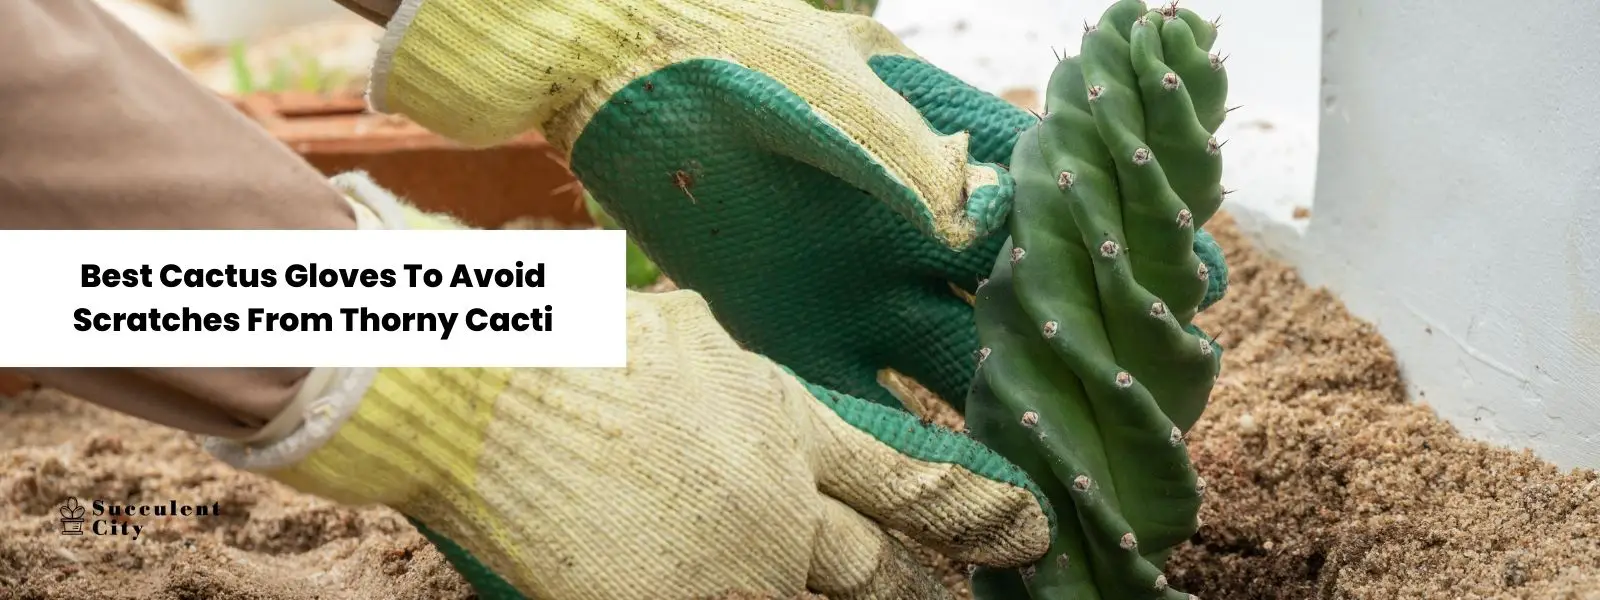 Los mejores guantes de cactus para evitar los arañazos de los cactus espinosos